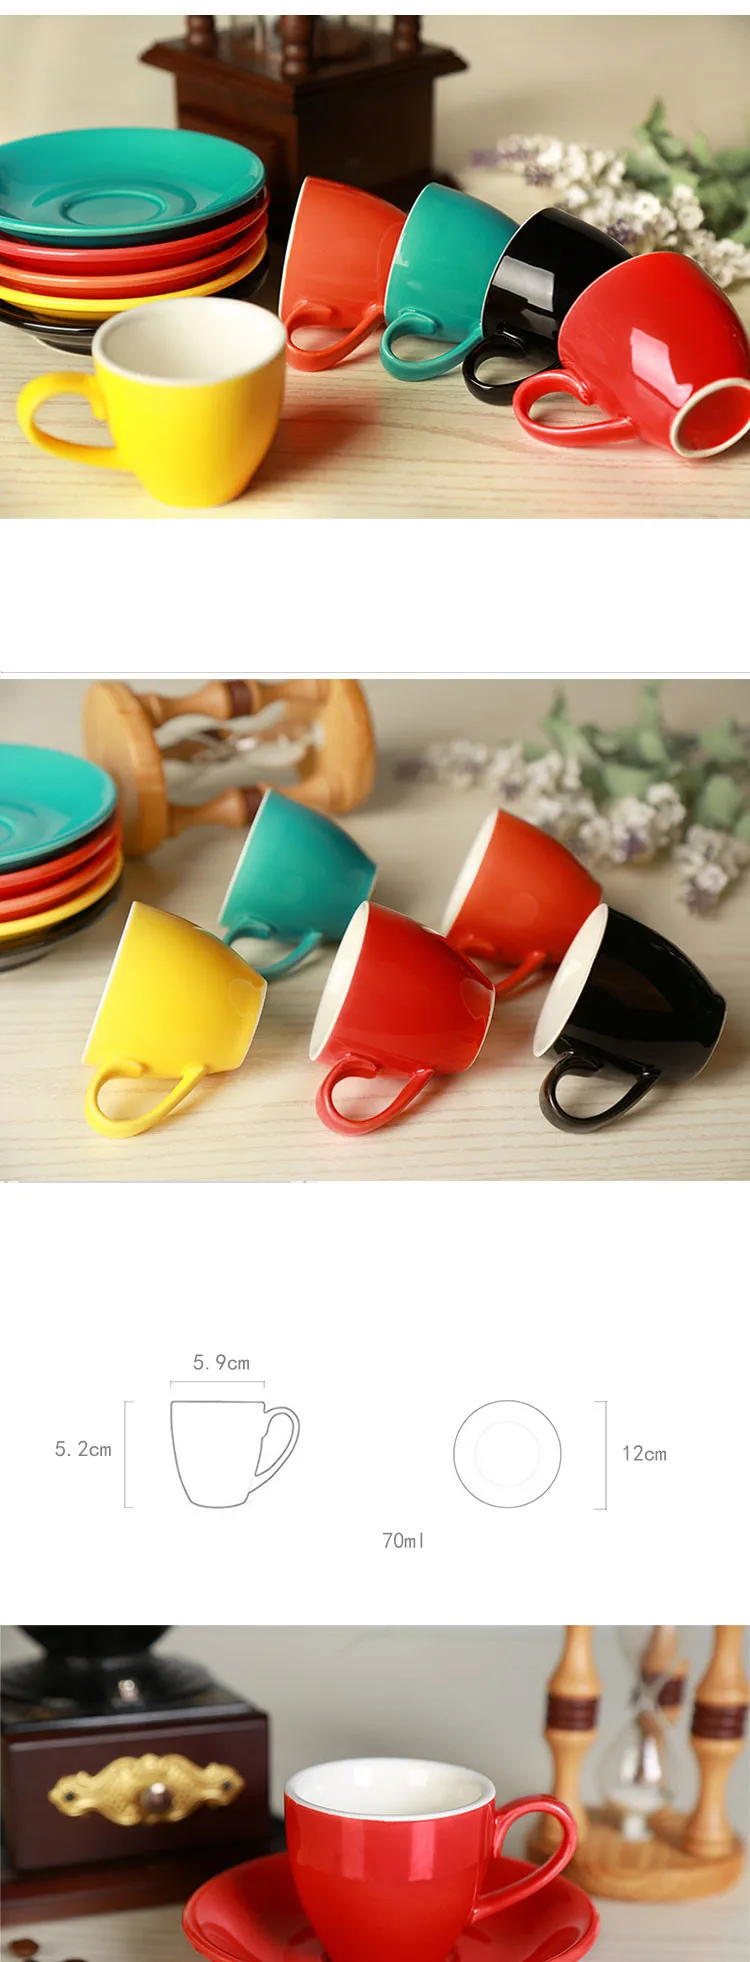 Jia-gui luo 1 может рекламировать! 70 мл/80 мл, высококачественный набор керамических кофейных чашек, простой европейский капучино